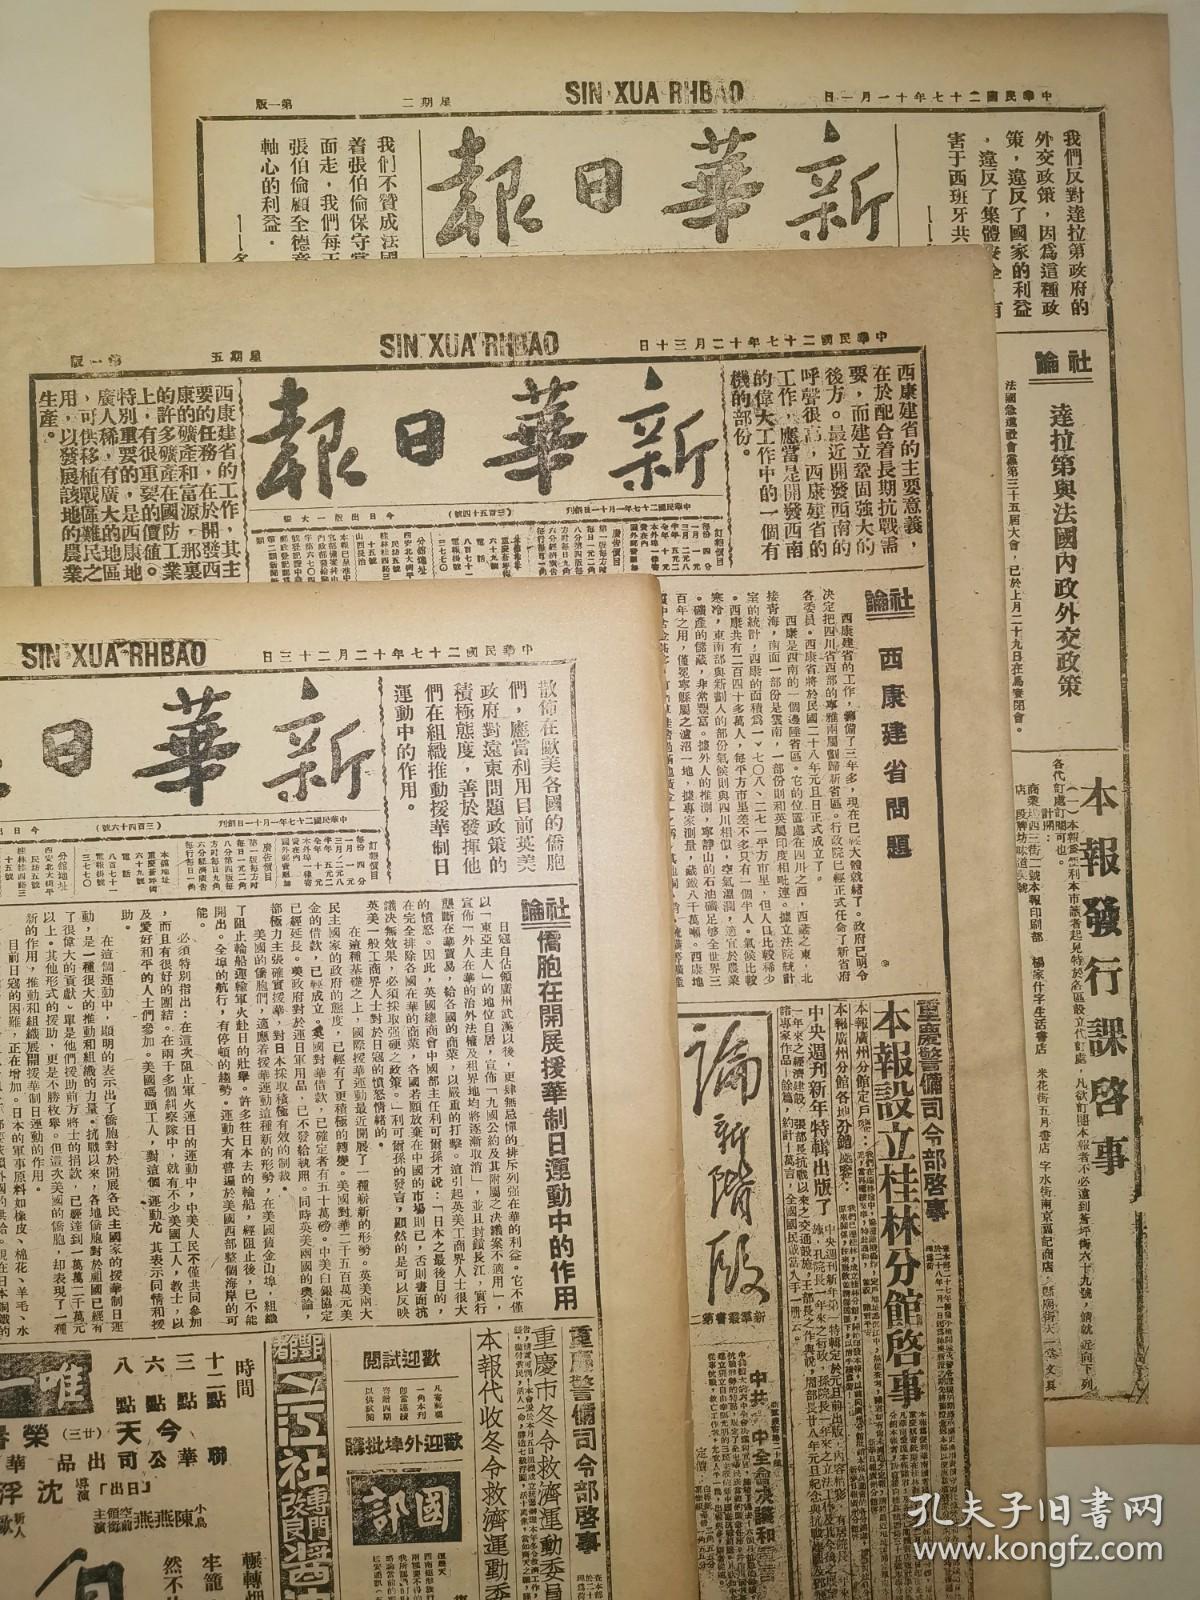 1939年10月3日 新华日报 文史资料 请仔细看描述